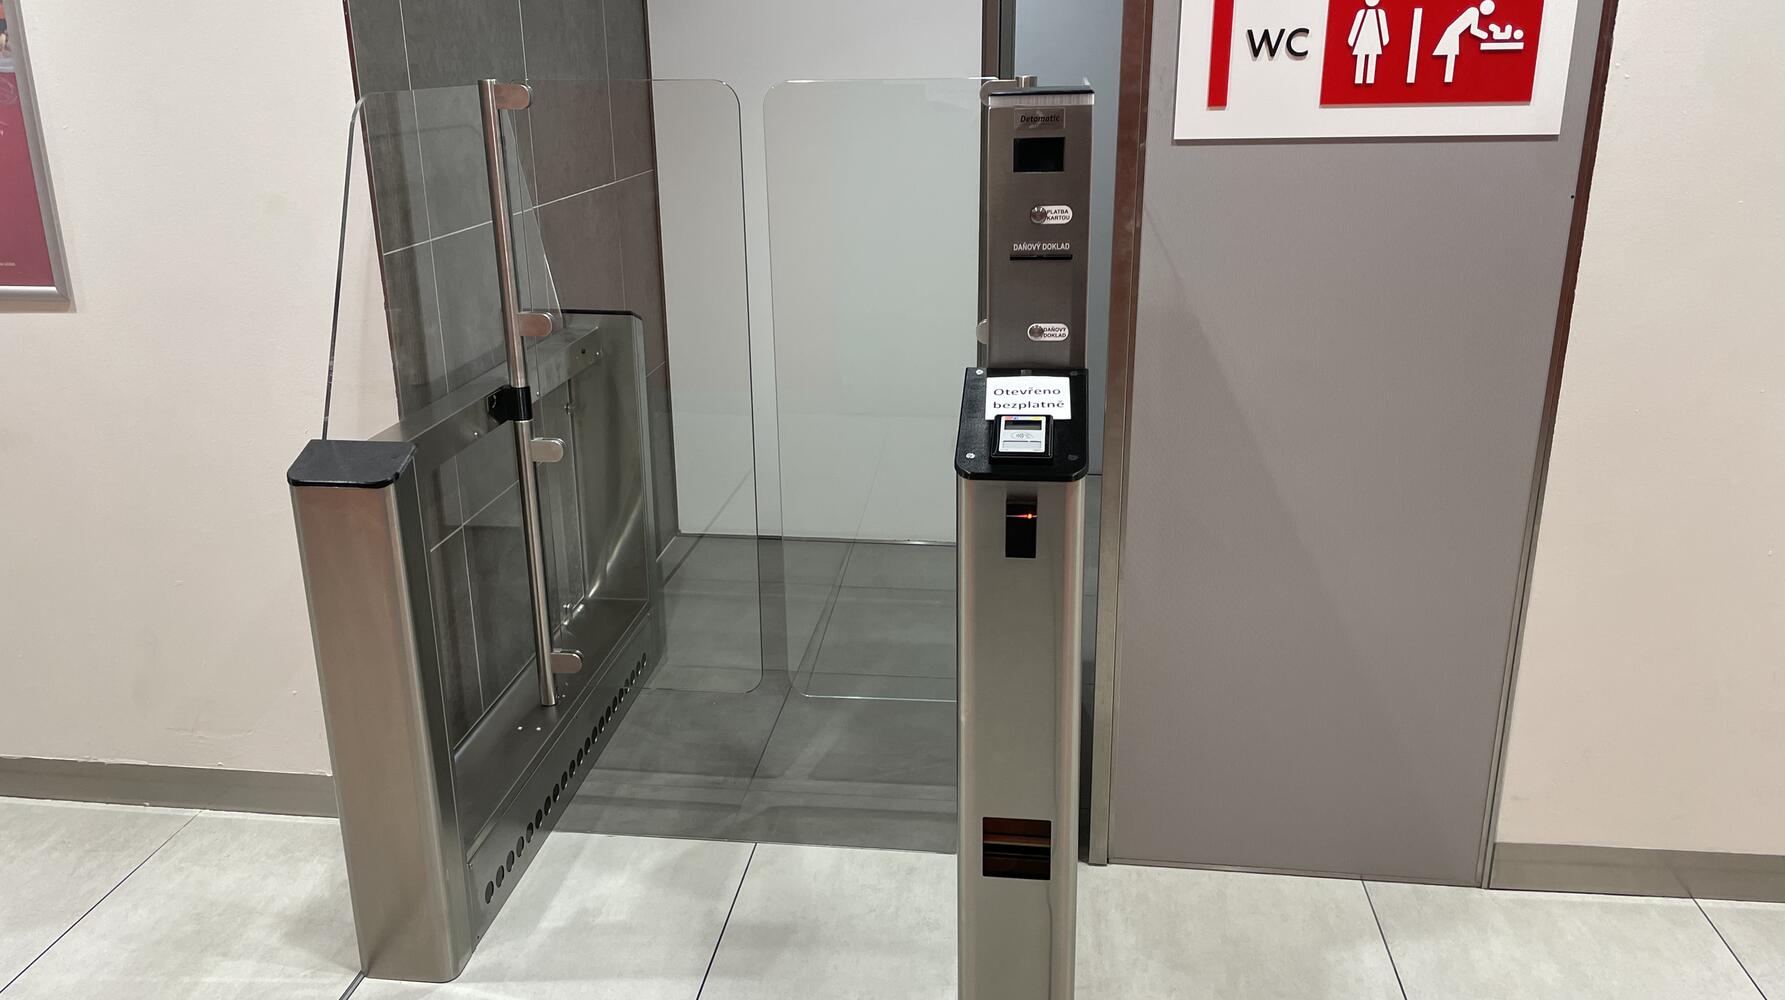 Vstupní turnikety s platebním automatem na toalety